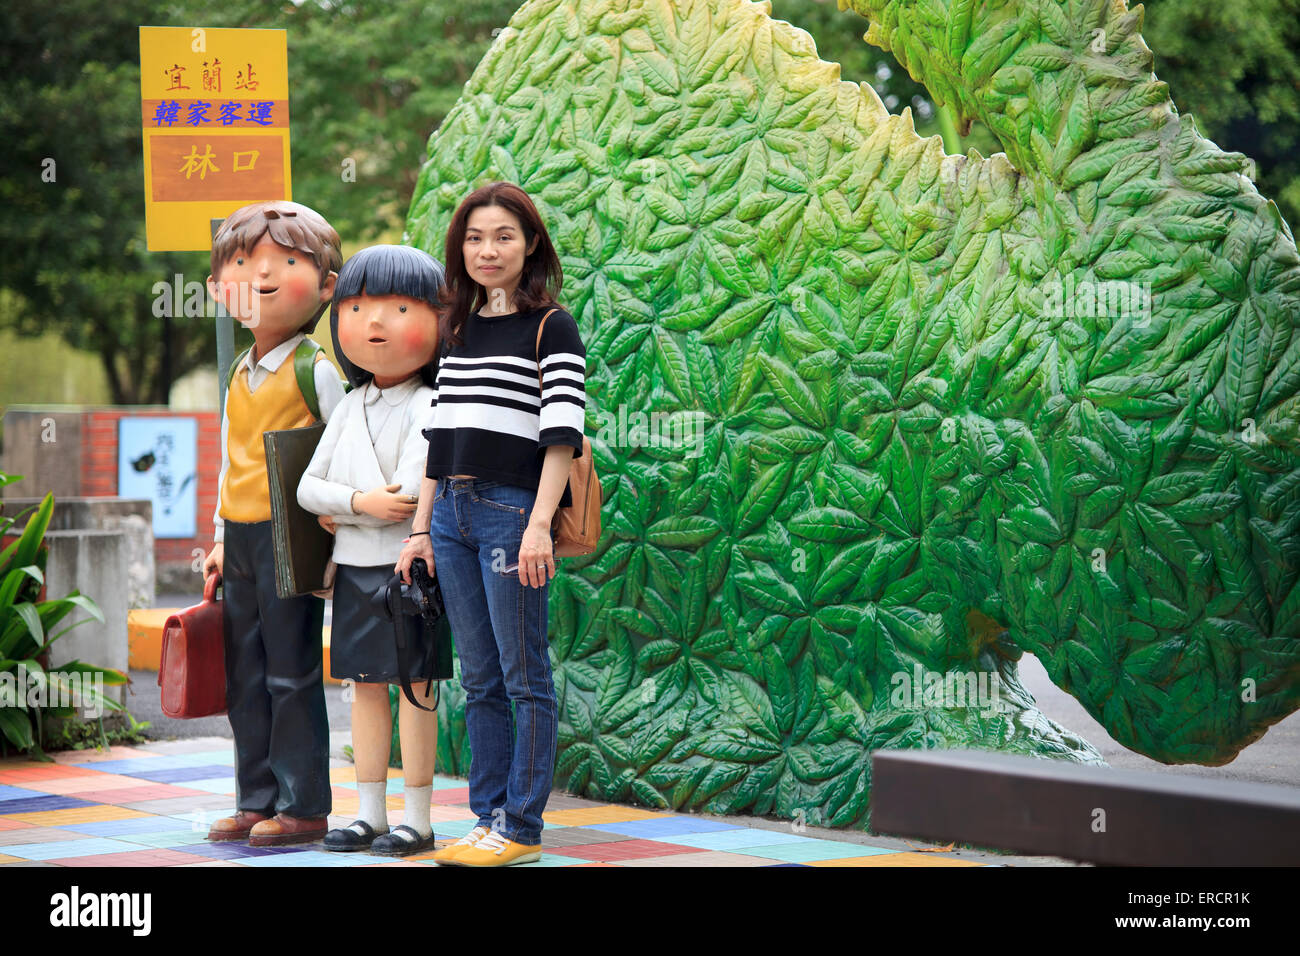 El condado de Ilan, Taiwán - Junio 01, 2015: Jimmy Laio Plaza, es un lugar con estilo de pintura Jimmy's cerca de Ilan tarin stat Foto de stock